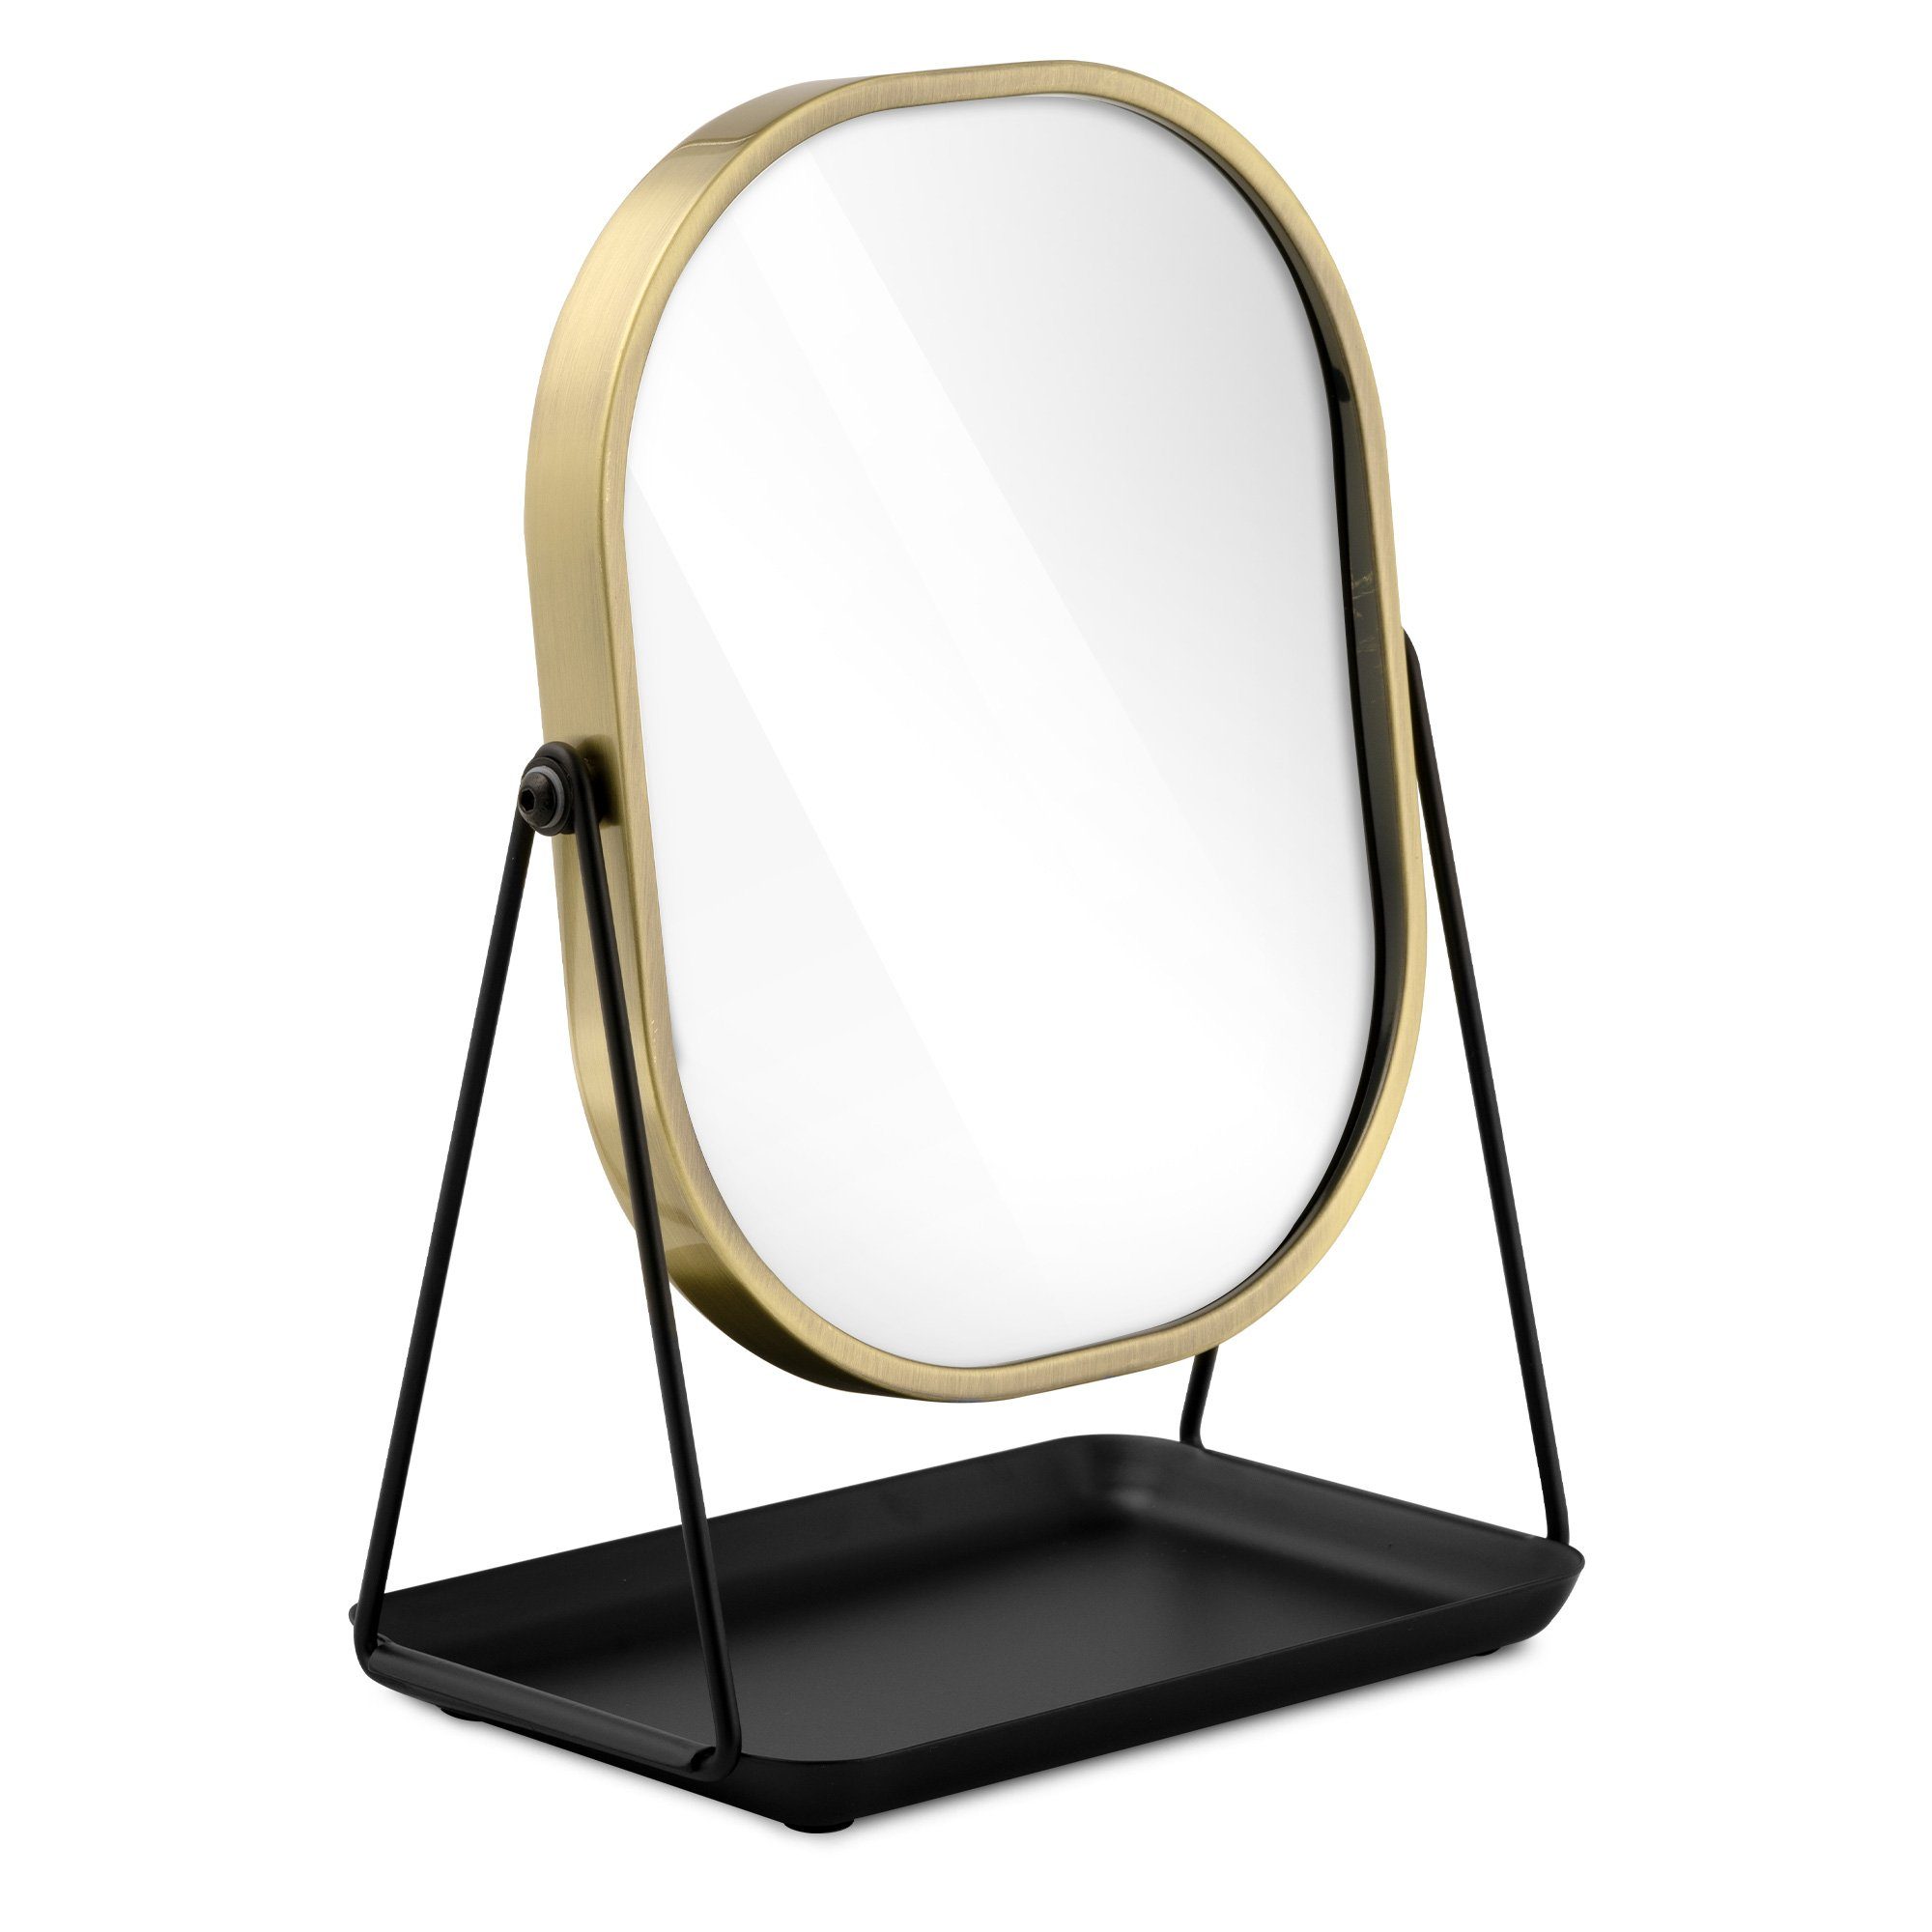 Standspiegel Tischspiegel Kosmetikspiegel Makeup Spiegel Designer Deco Spiegel 